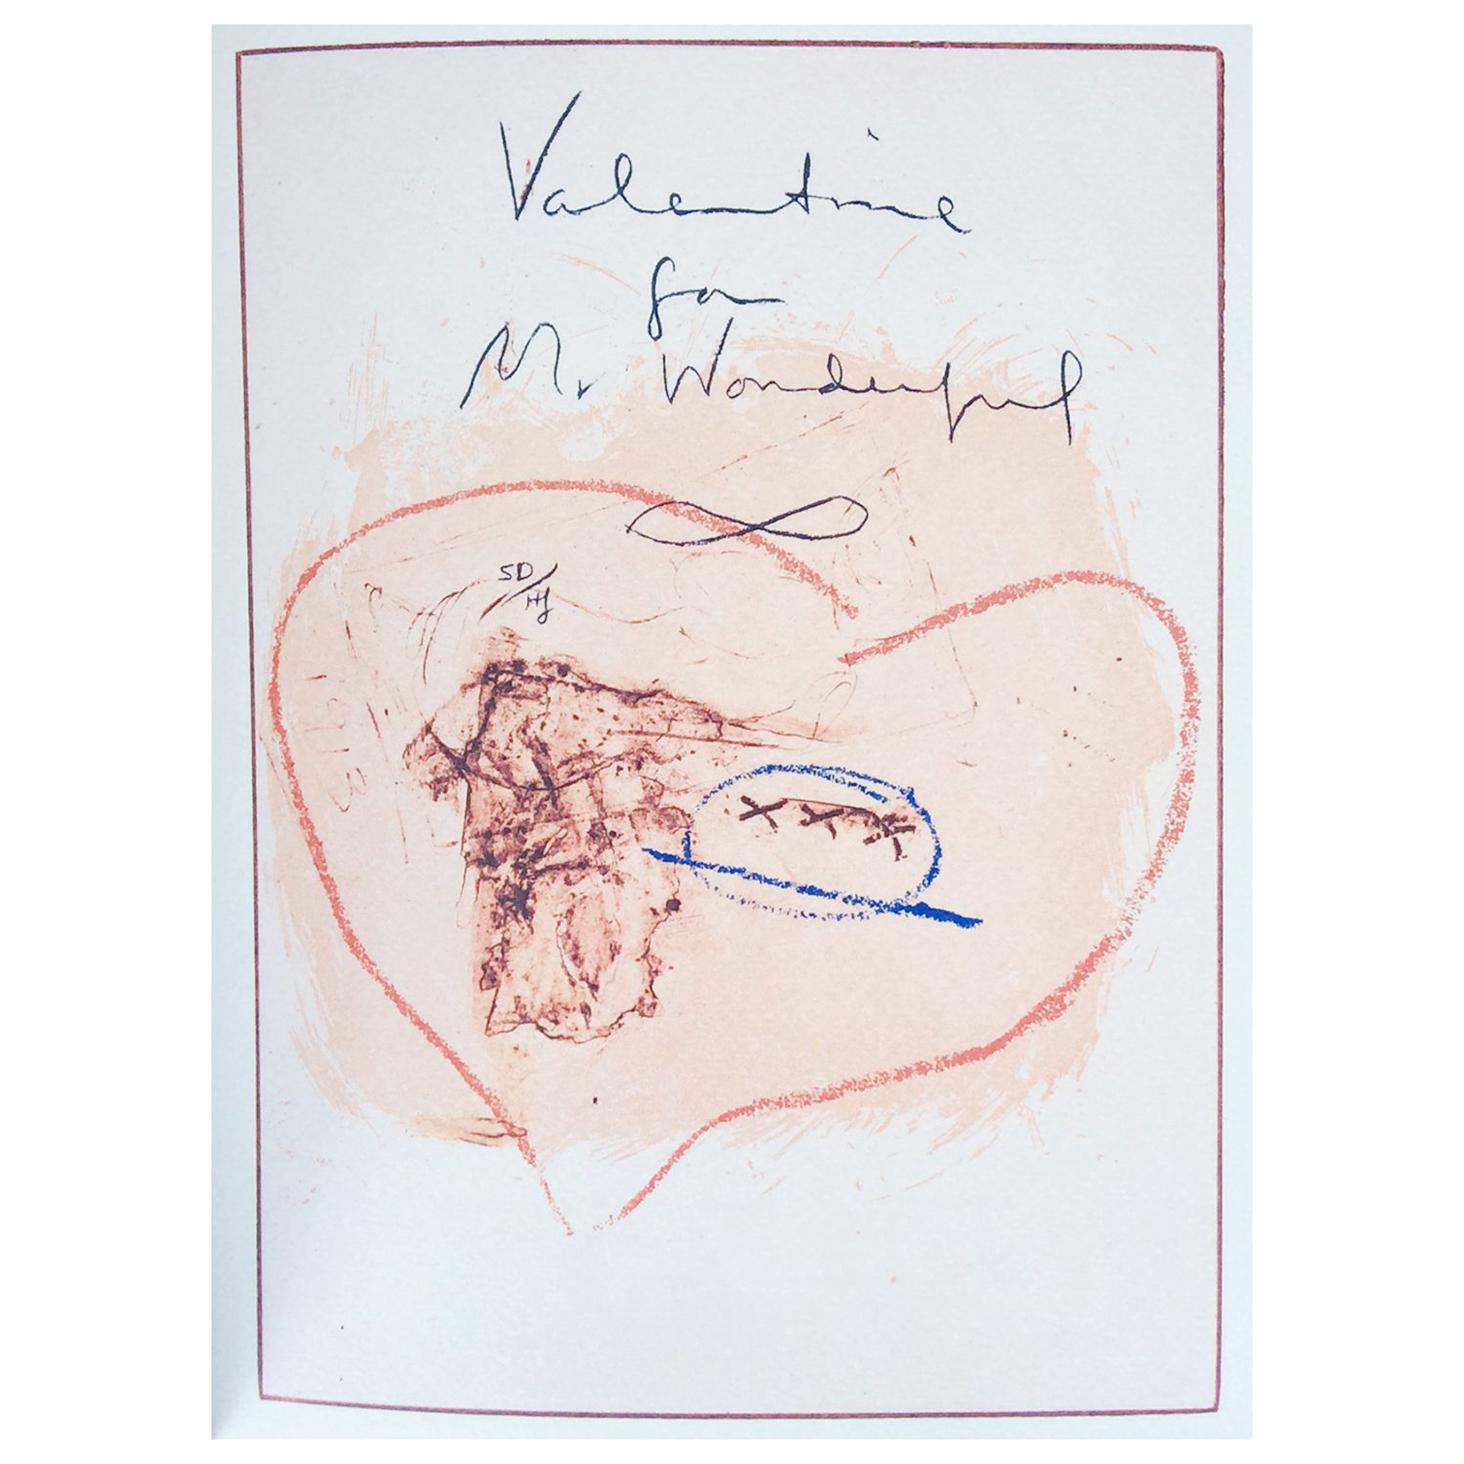 Signed Helen Frankenthaler Book of Intaglio Prints, "Valentine for Mr. Wonderful